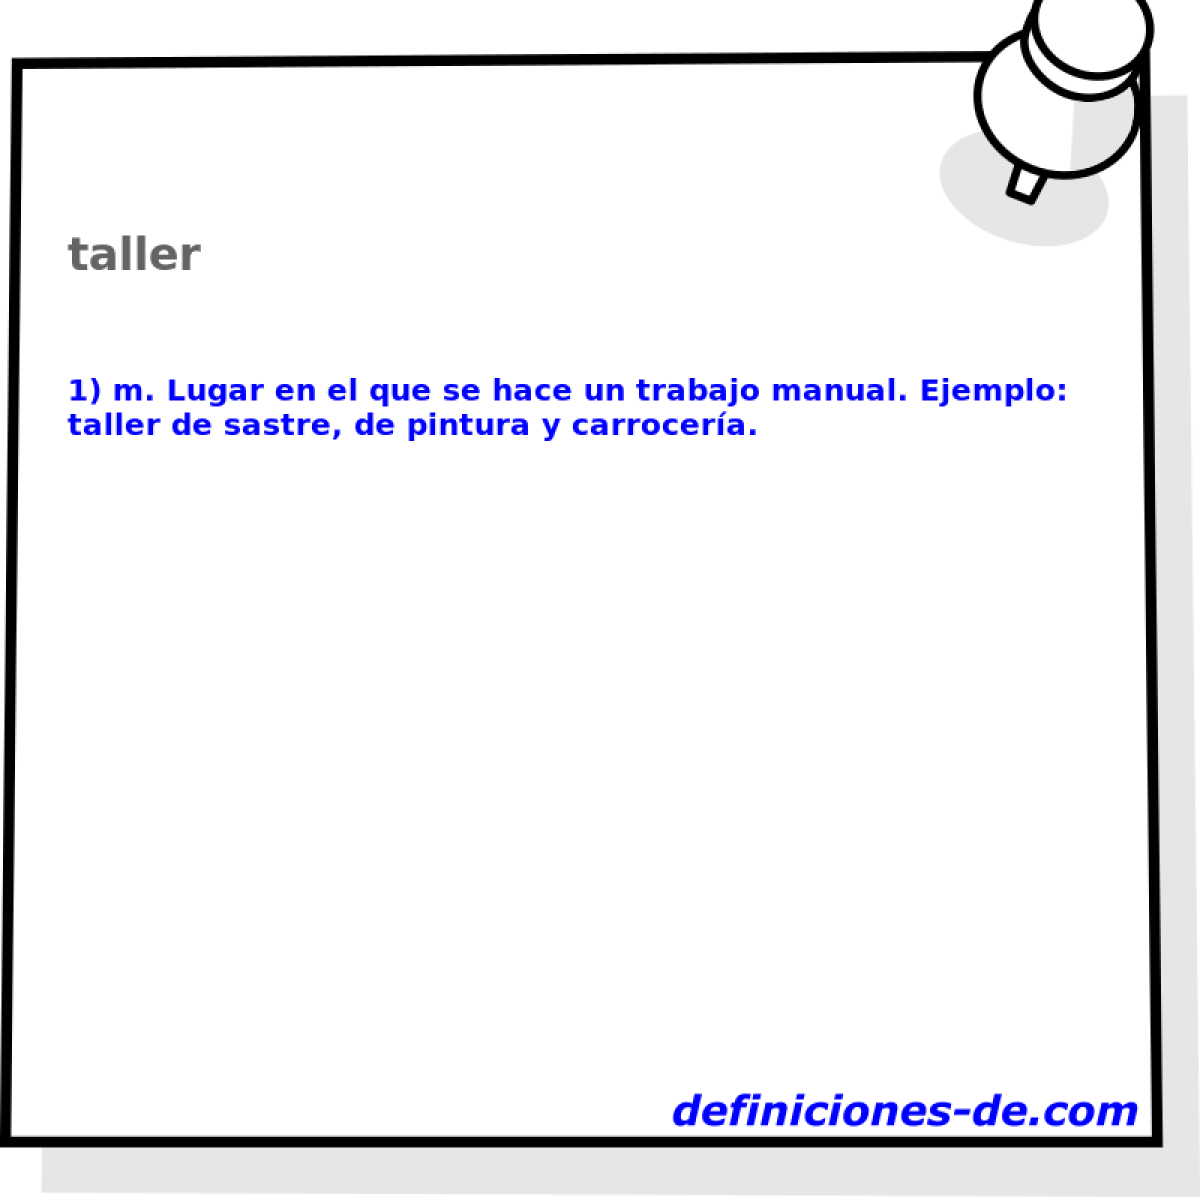 taller 